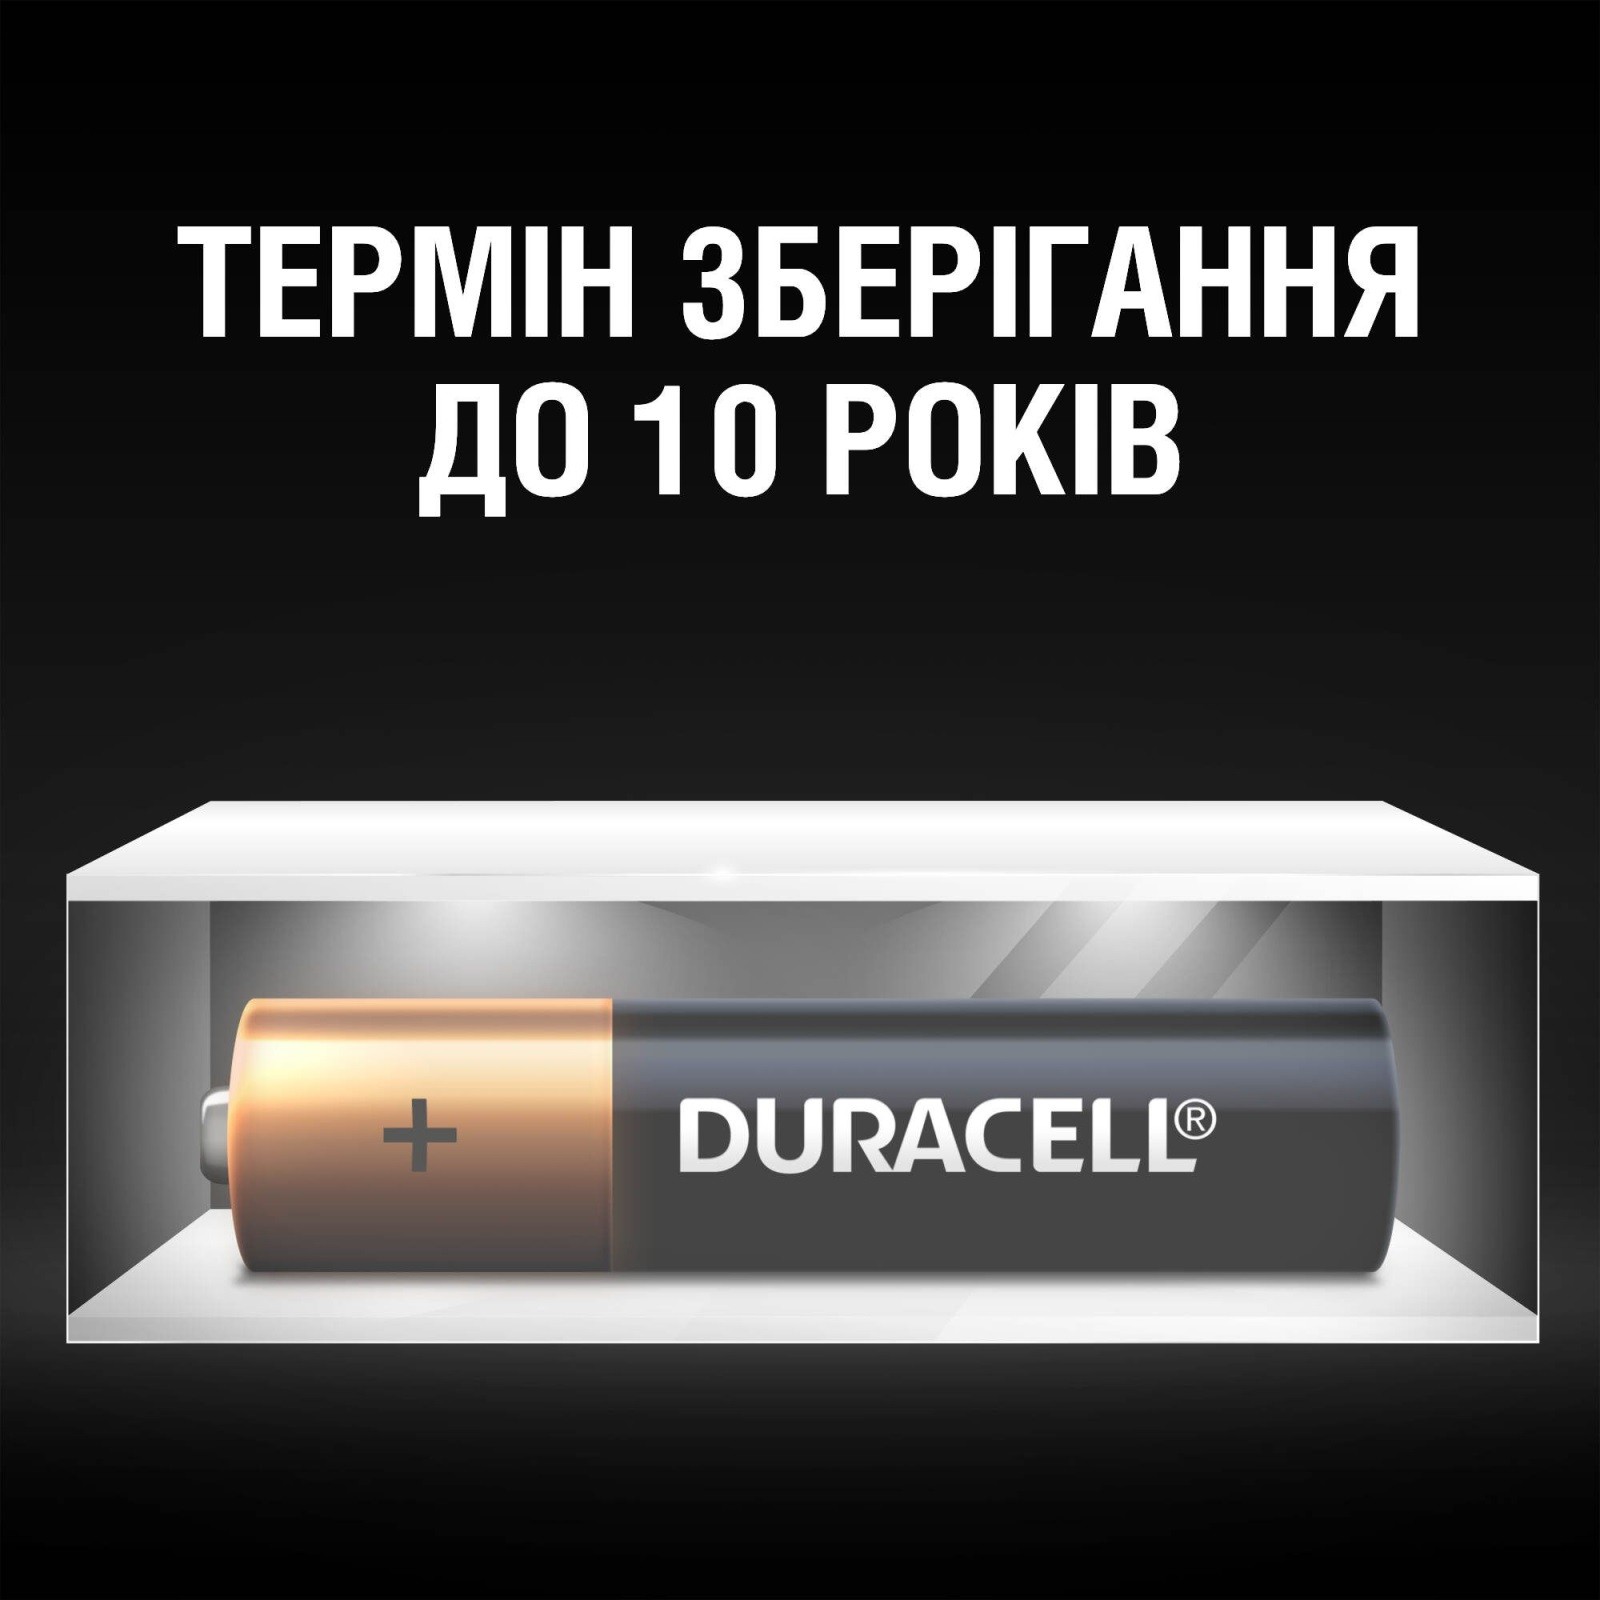 Батарейка Duracell Simply LR06 AA 4 шт.(отрывной набор 4X4 шт.) отзывы - изображения 5